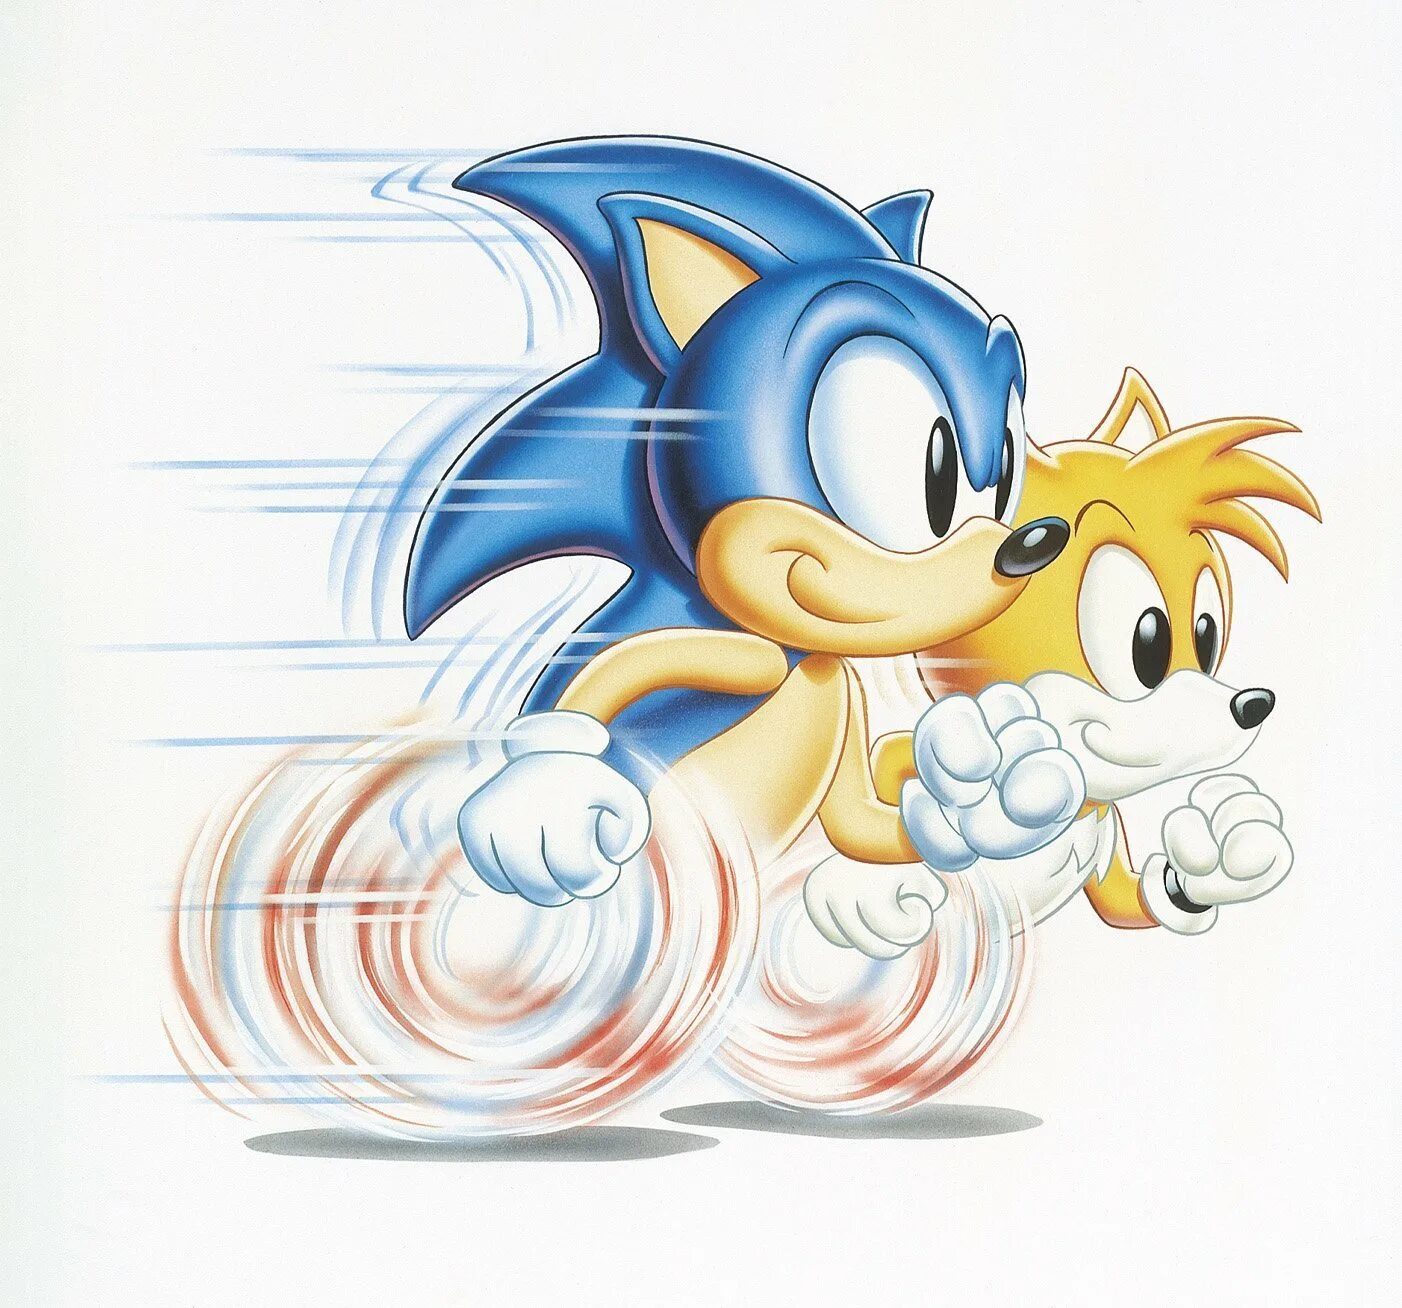 Оригинальный соник. Соник 2 Тейлз. Tails Sonic the Hedgehog арт. Ёж Соник сега. Соник 1 и Тейлз.